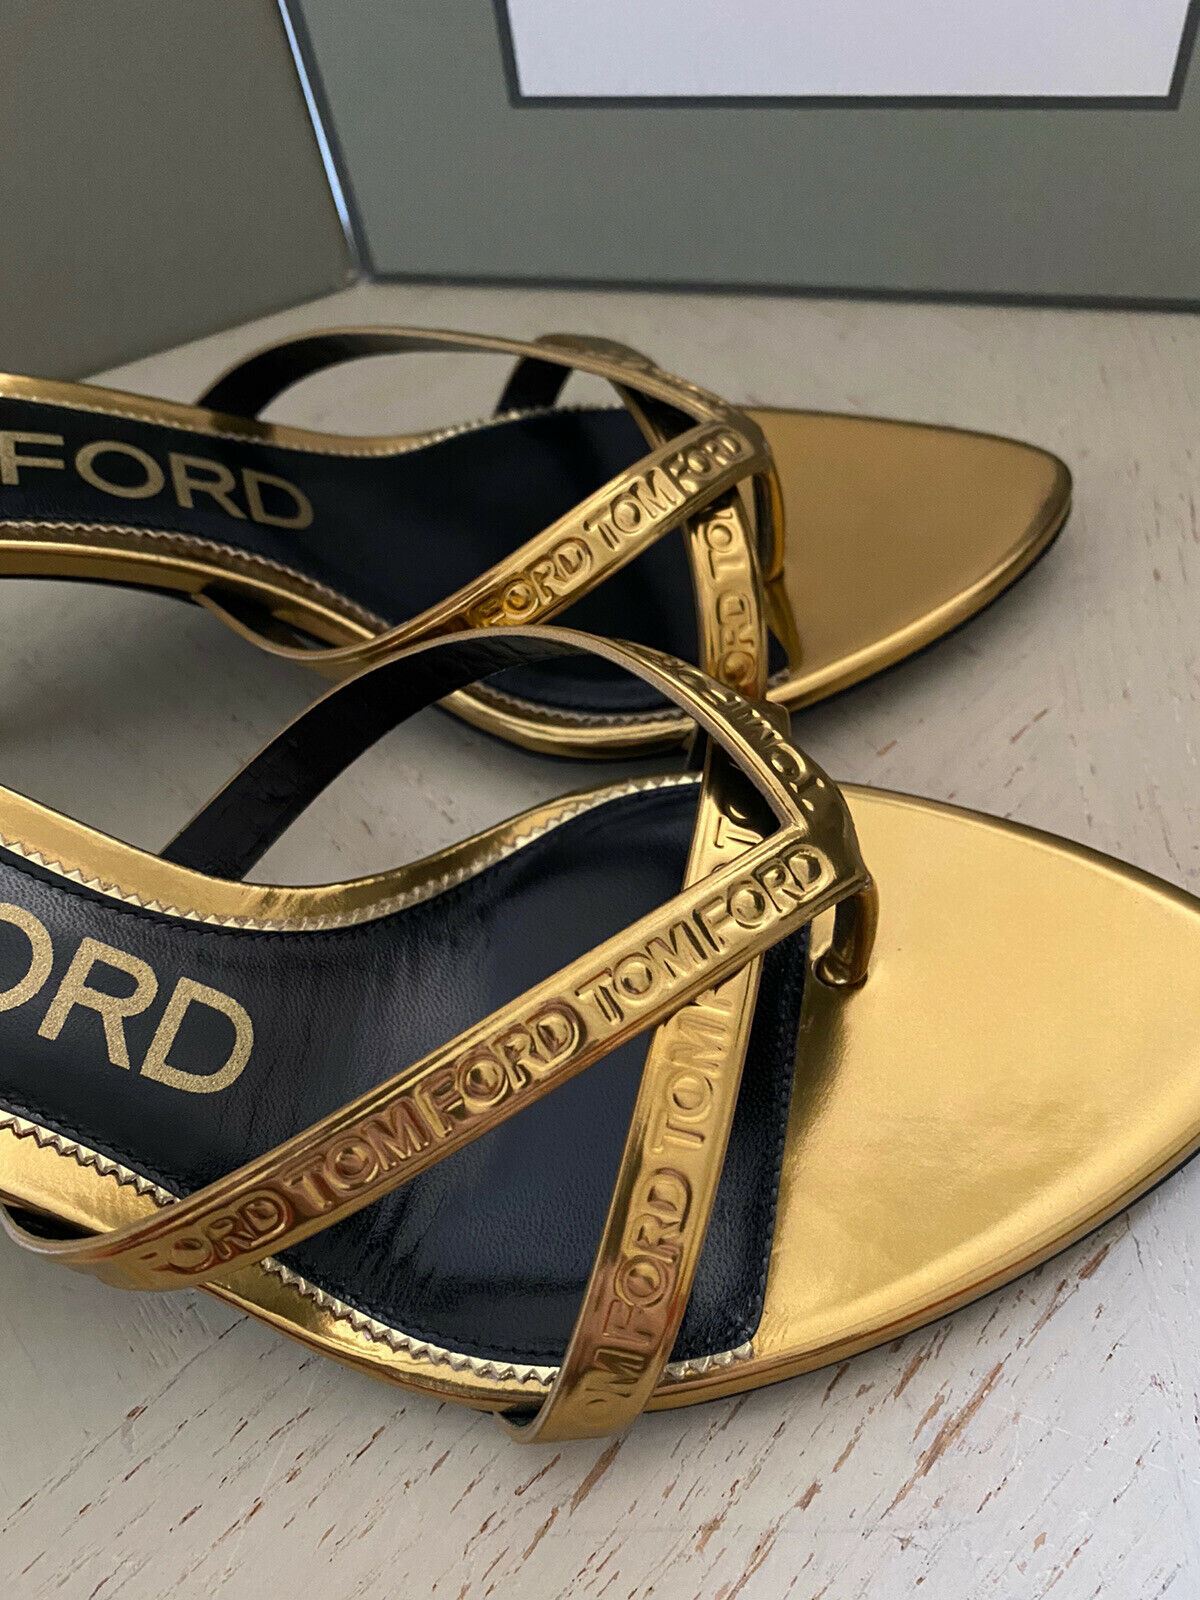 NIB $990 Tom Ford Женские кожаные сандалии с логотипом Золото 8 США/38 ЕС Италия